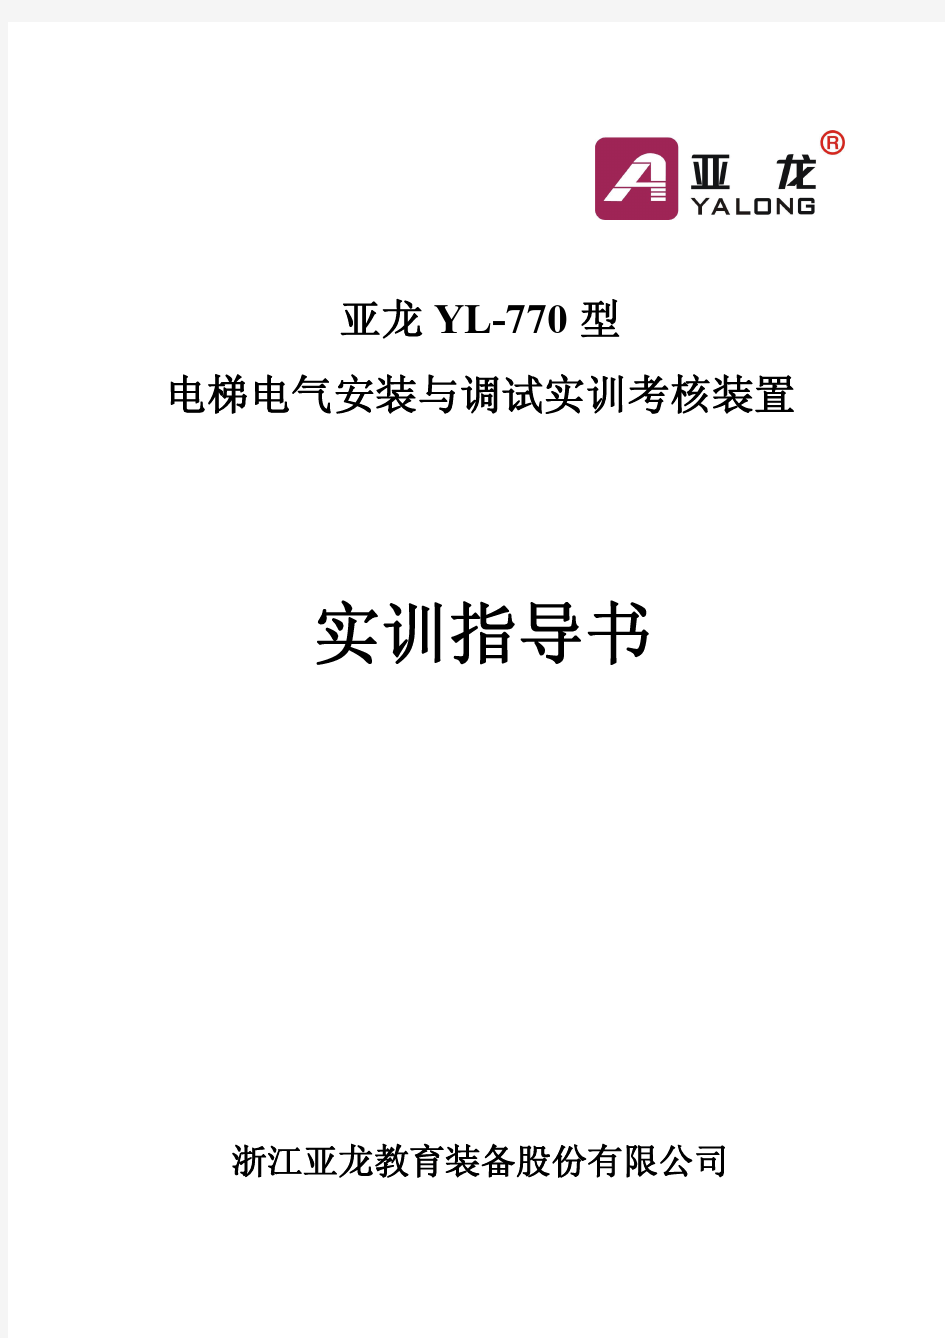 亚龙YL-770型电梯电气安装及调试实训考核装置实训指导书